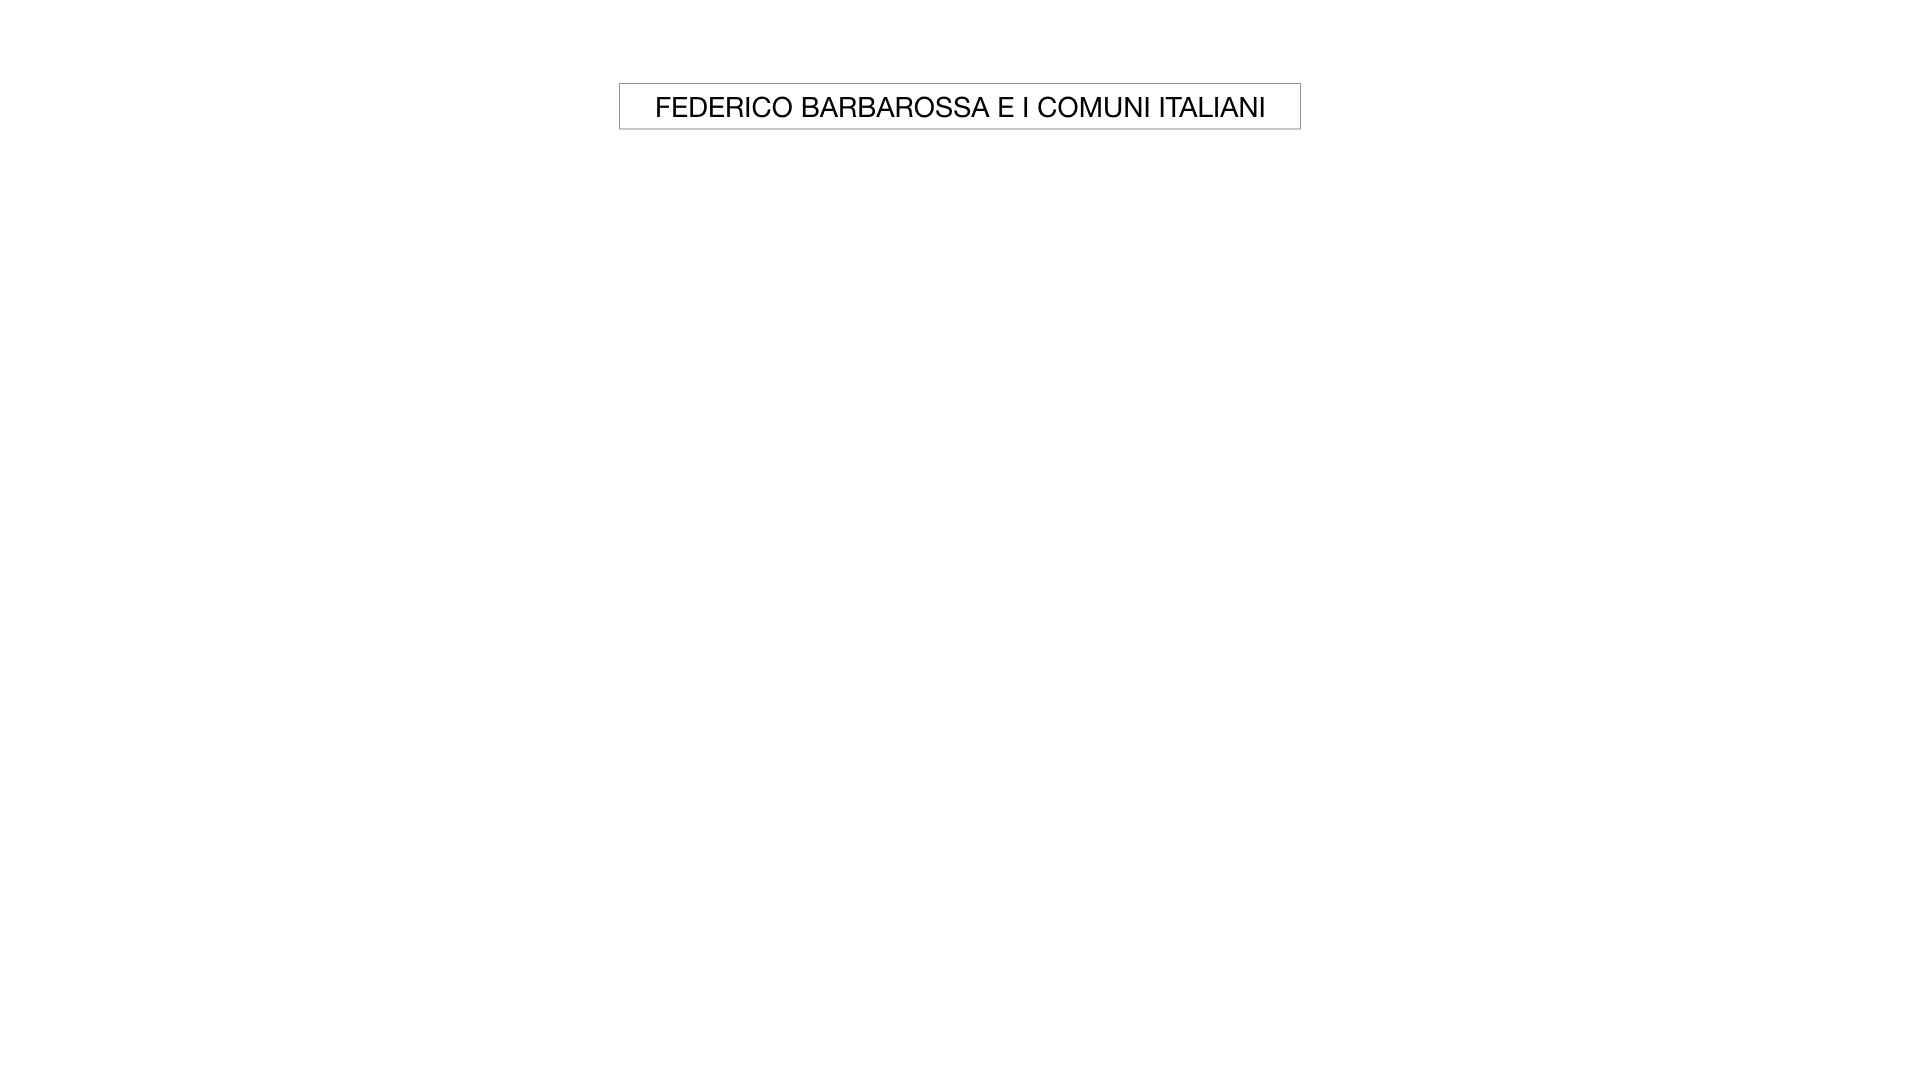 STORIA FEDERICO BARBAROSSA-MOVIMENTI RELIGIOSI_SIMULAZIONE_estesa.001